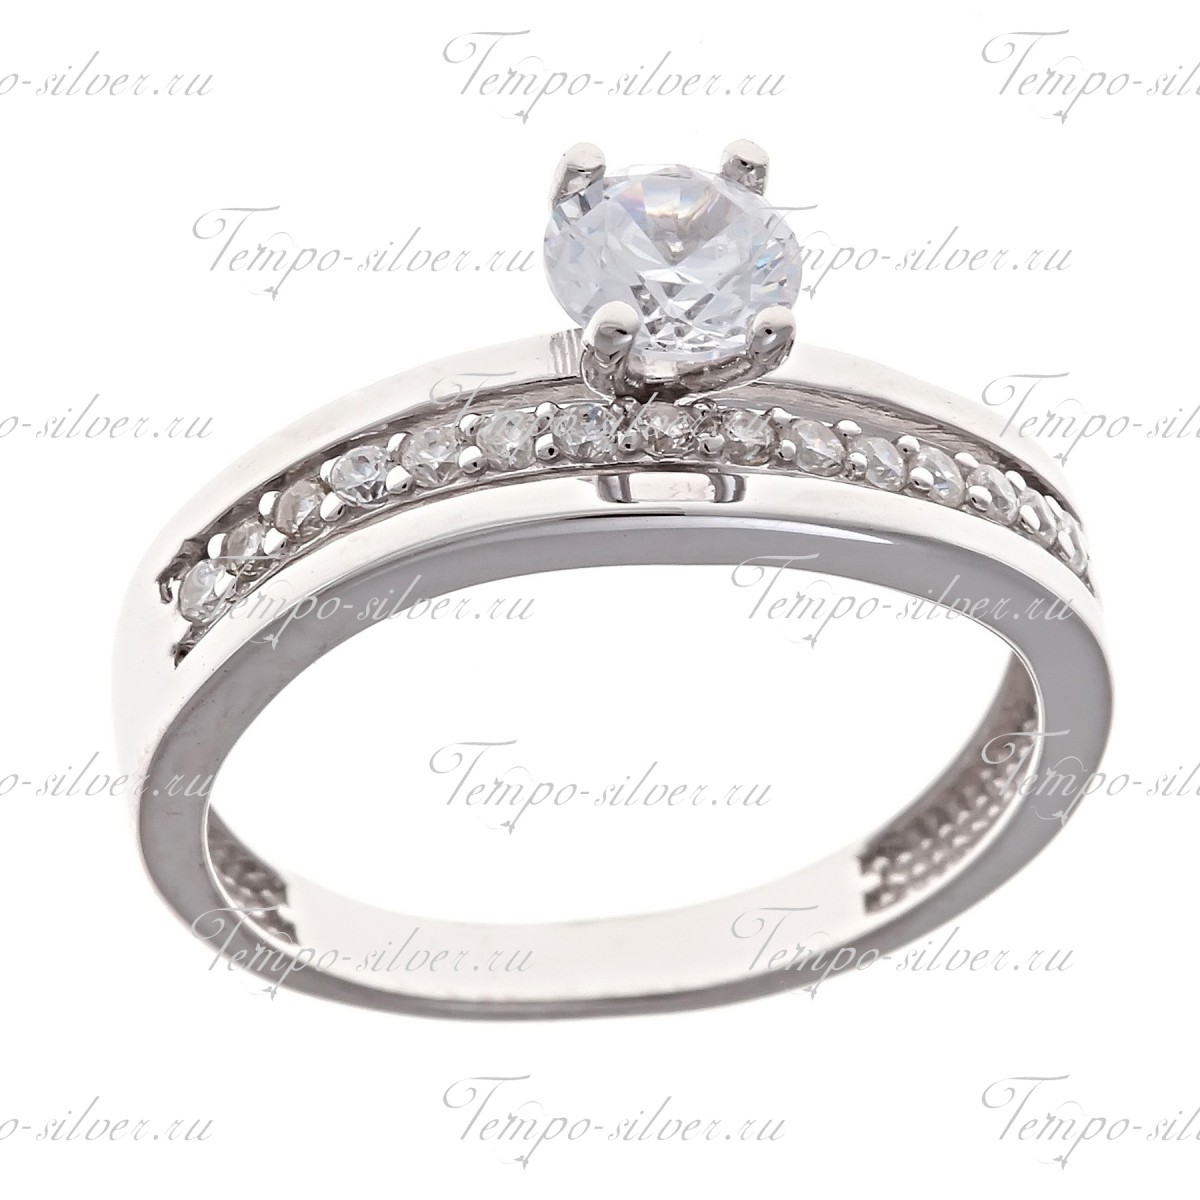 Кольцо из серебра с дорожкой из белых камней и крупным камнем по центру цена